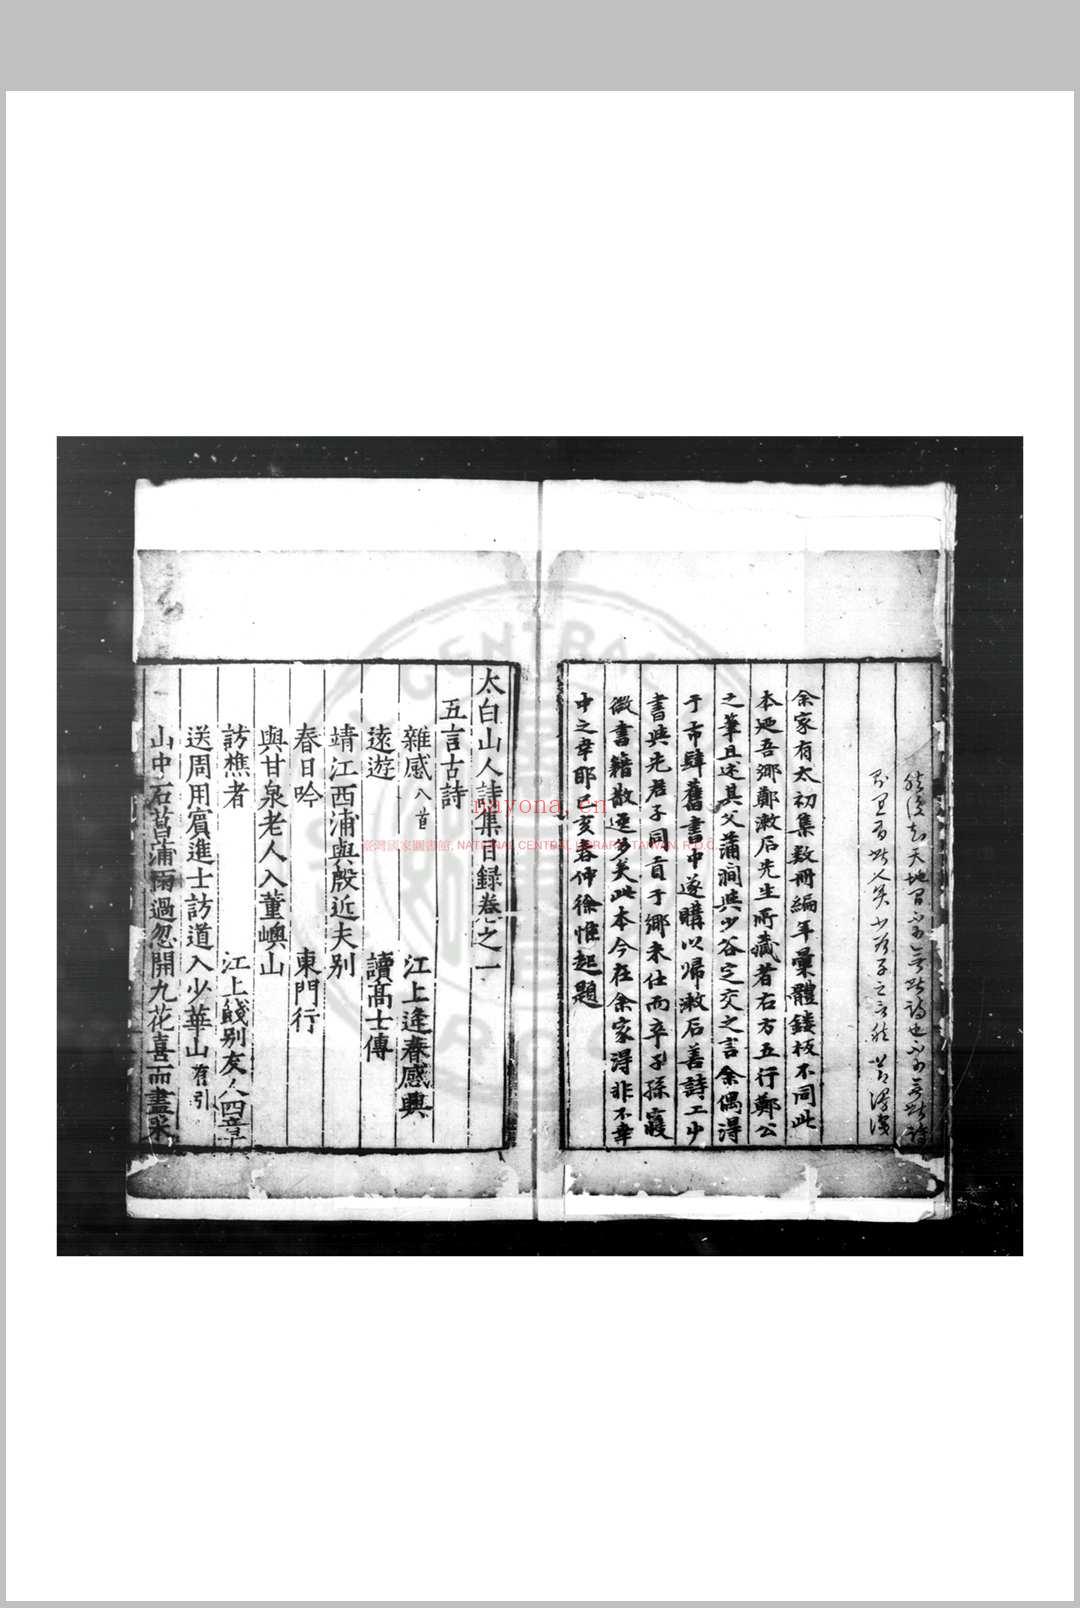 太白山人诗集 (明)孙一元撰 明嘉靖间(1522-1566)刊本